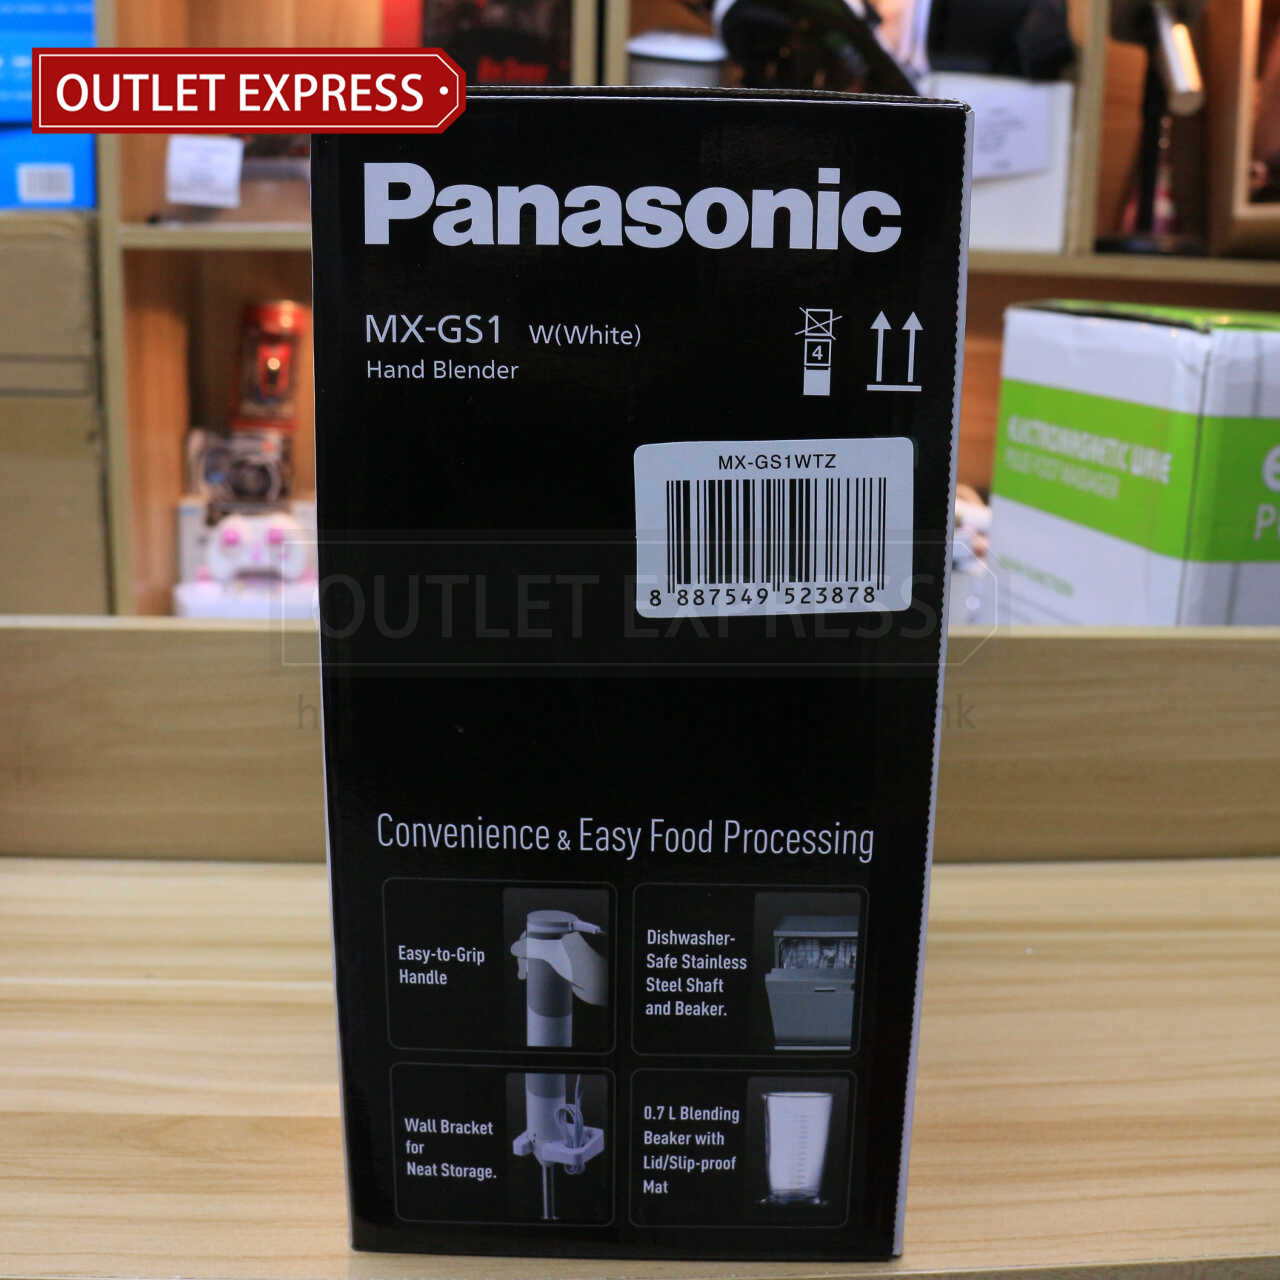 樂聲 Panasonic MX-GS1 手提攪拌機- Outlet Express HK生活百貨城實拍相片